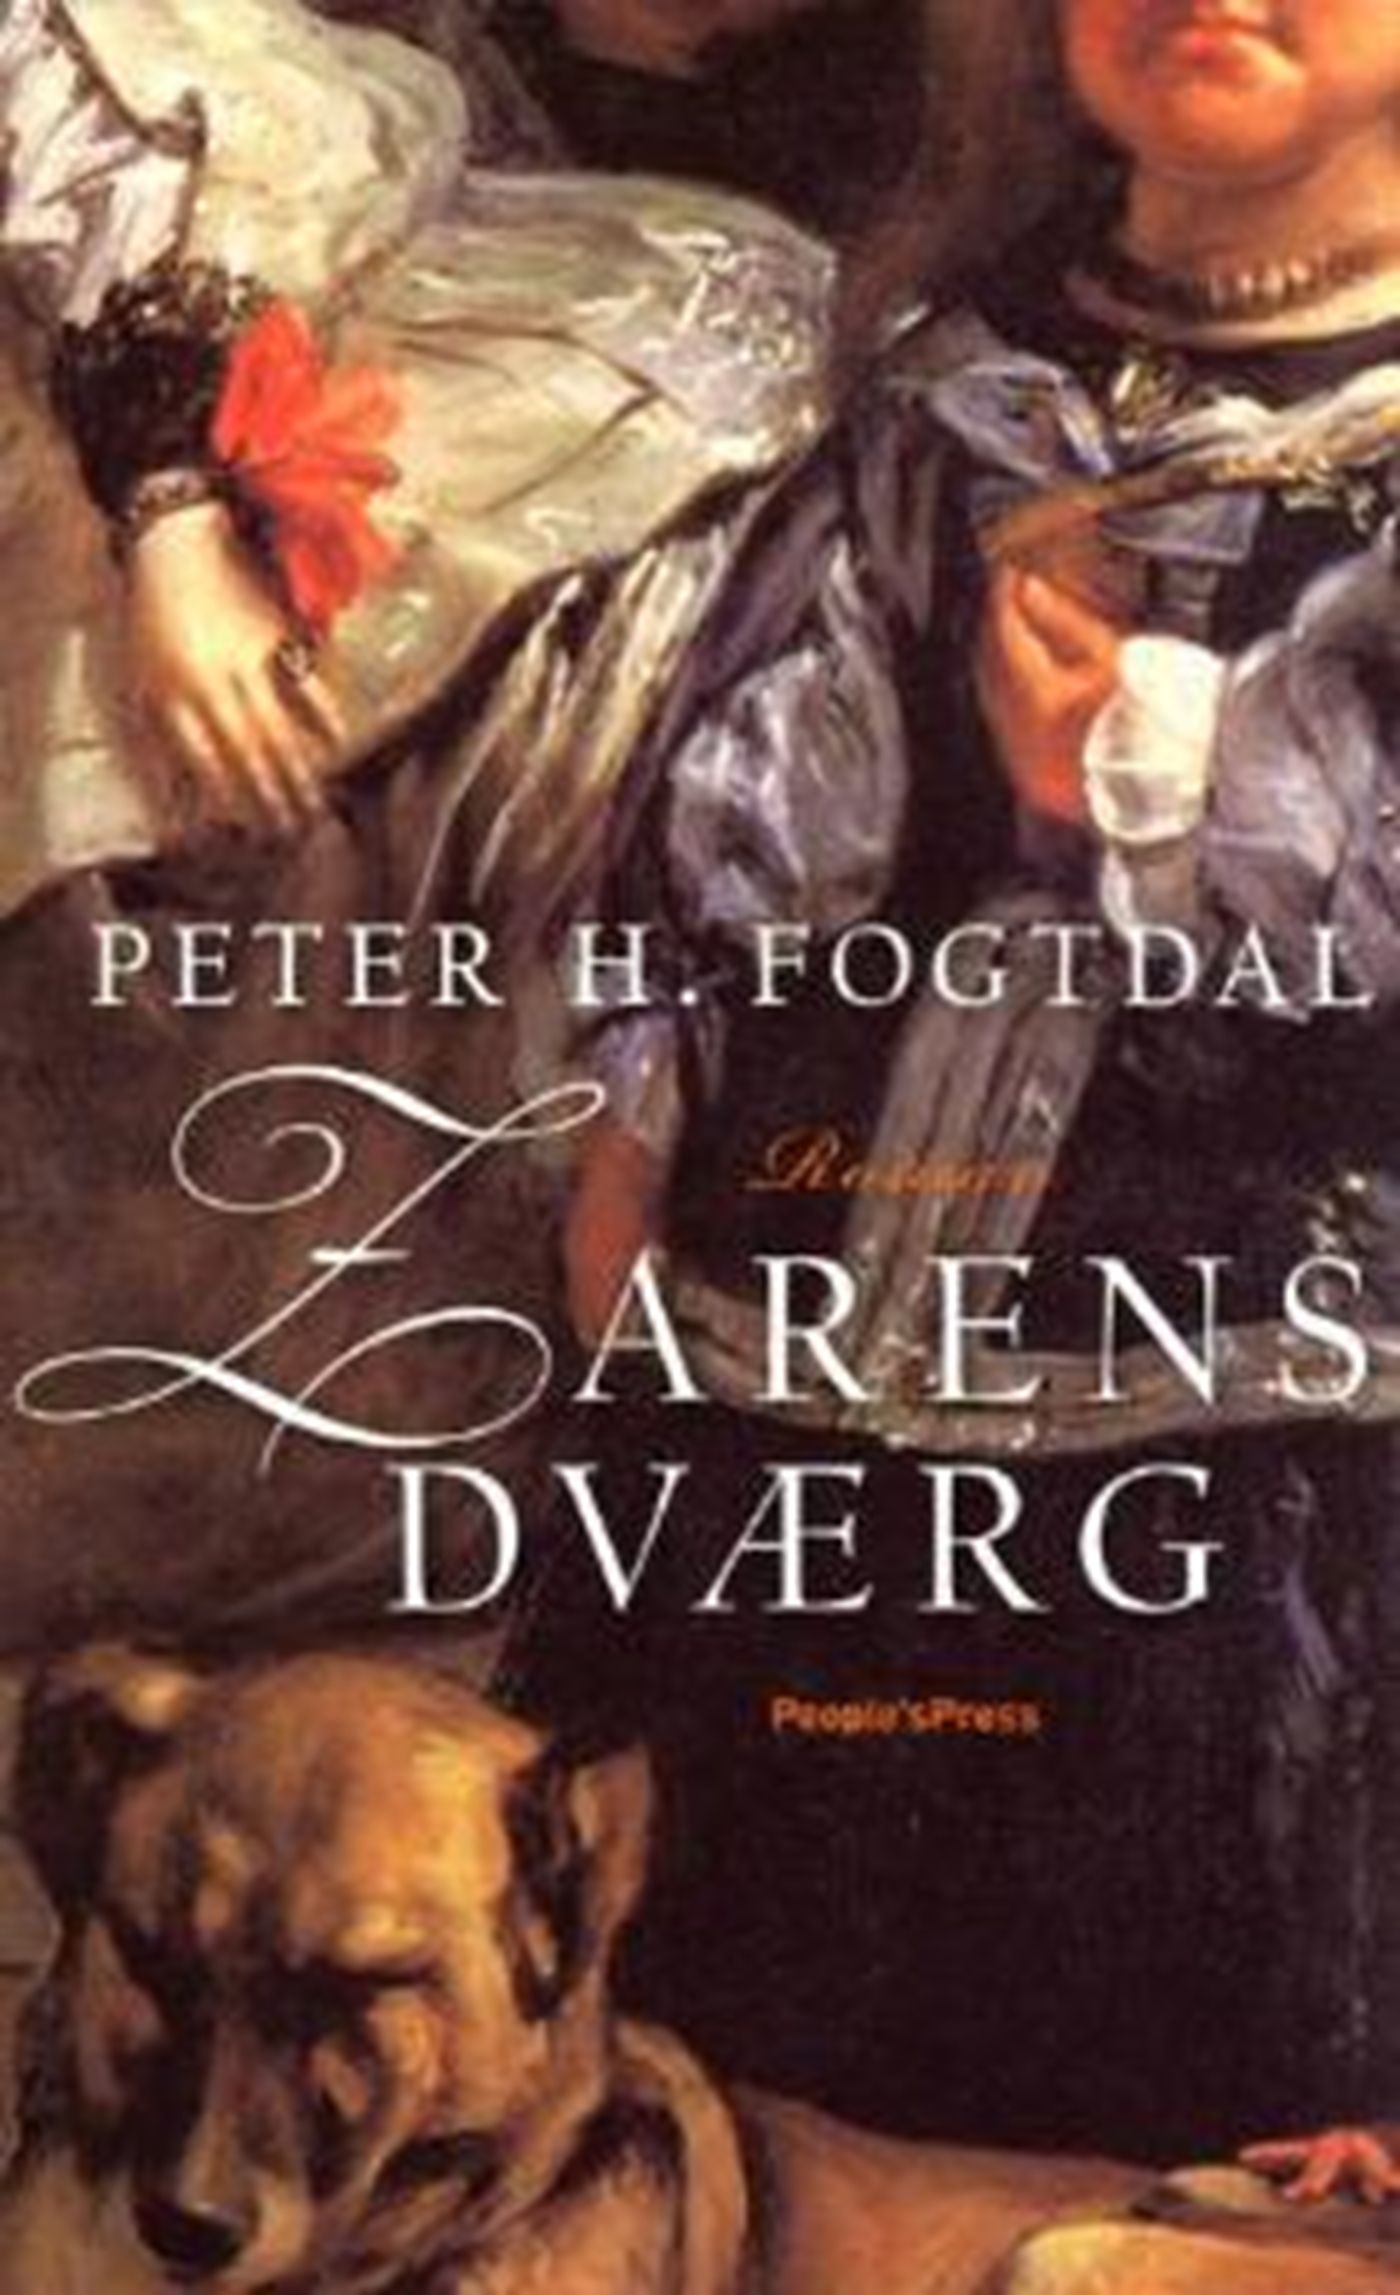 Zarens dværg, e-bok av Peter H. Fogtdal